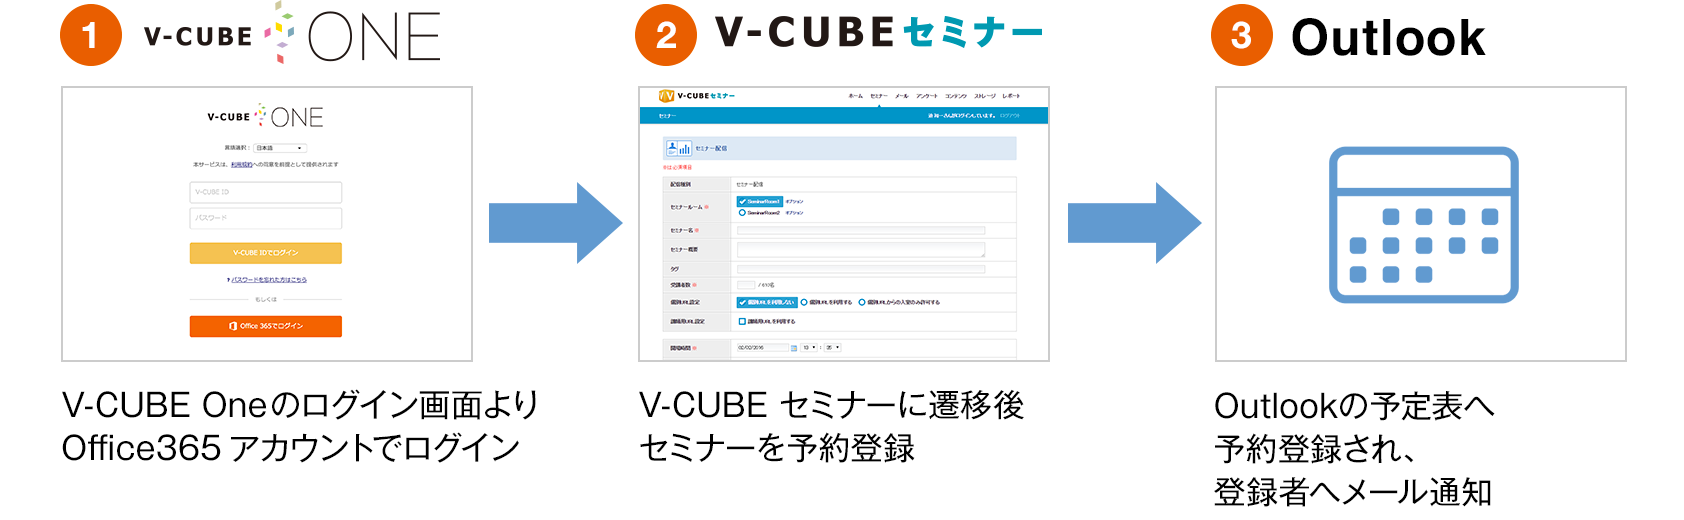 V-CUBE セミナー からOutlook 予定表への予約登録